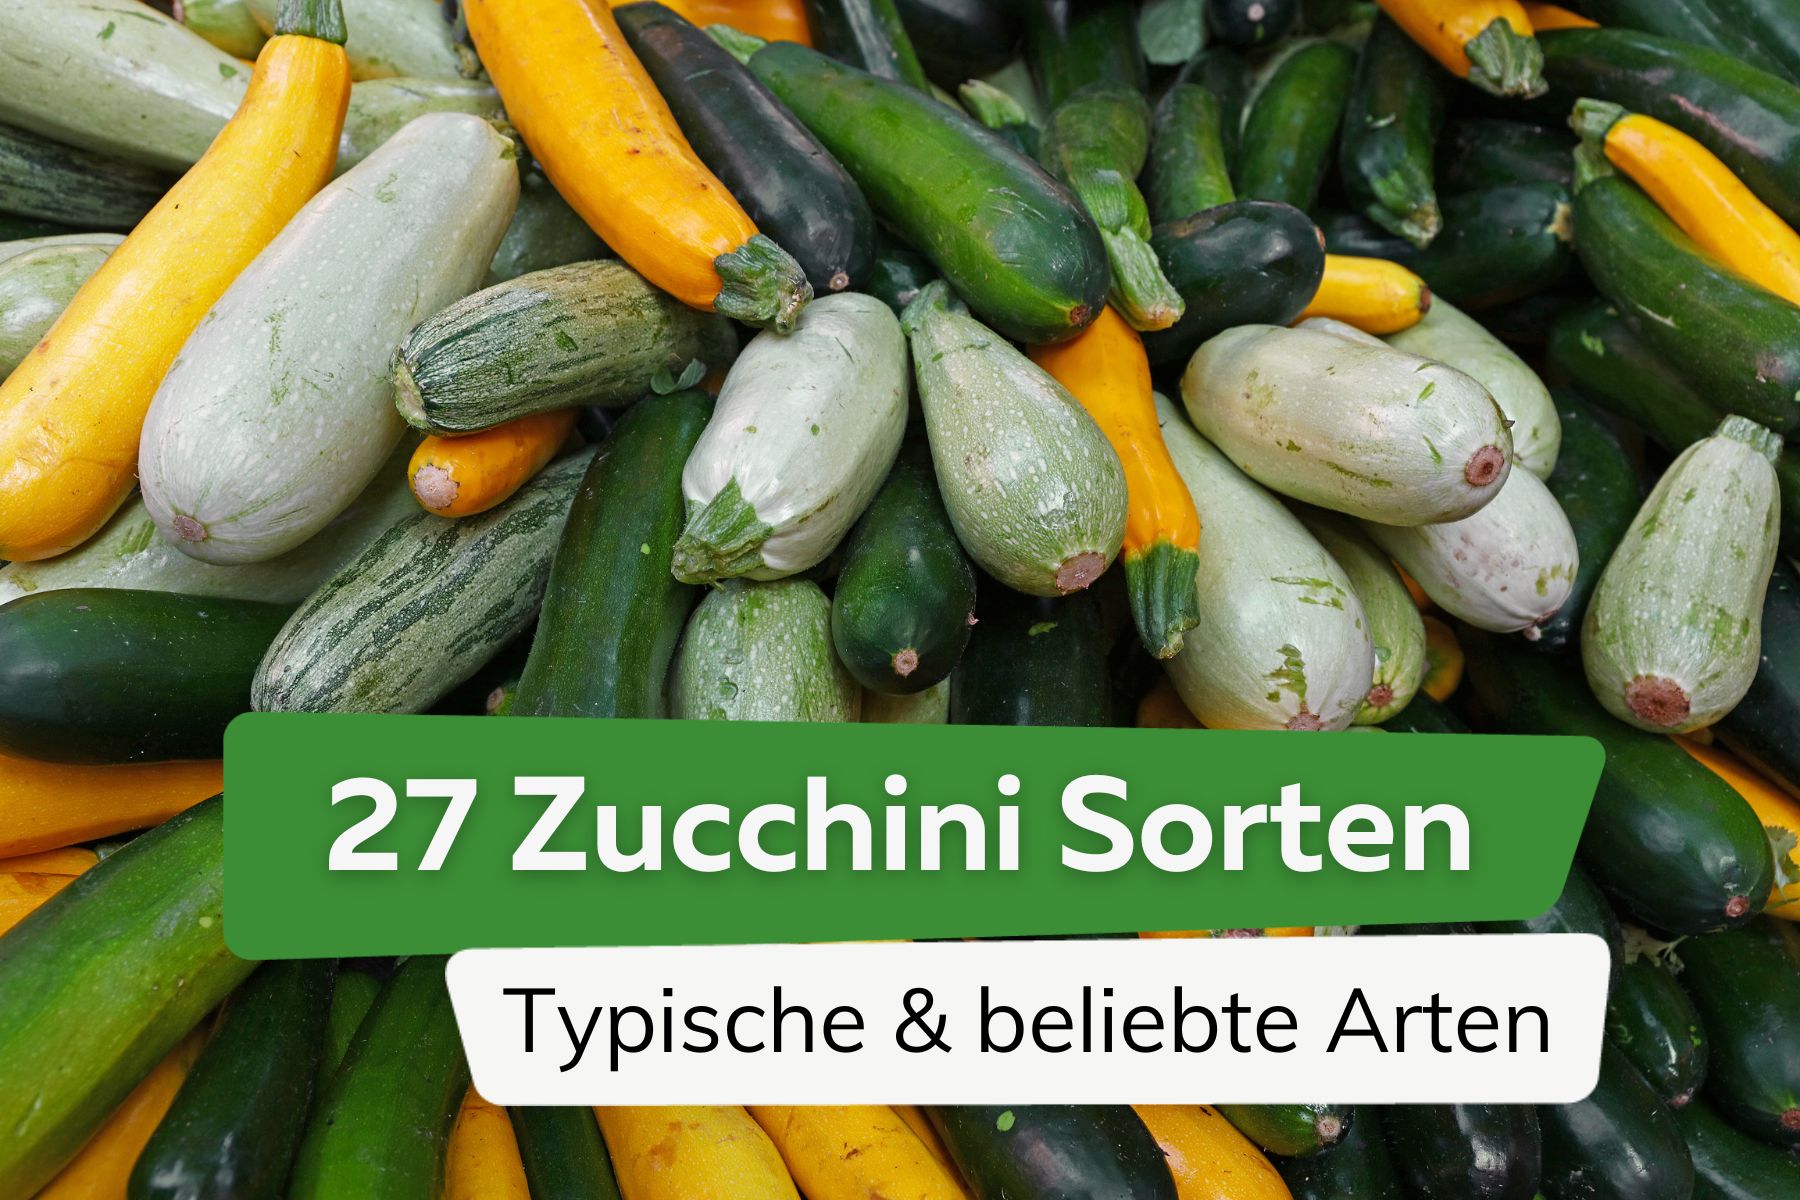 Zucchini-Sorten: 27 typische und beliebte Arten